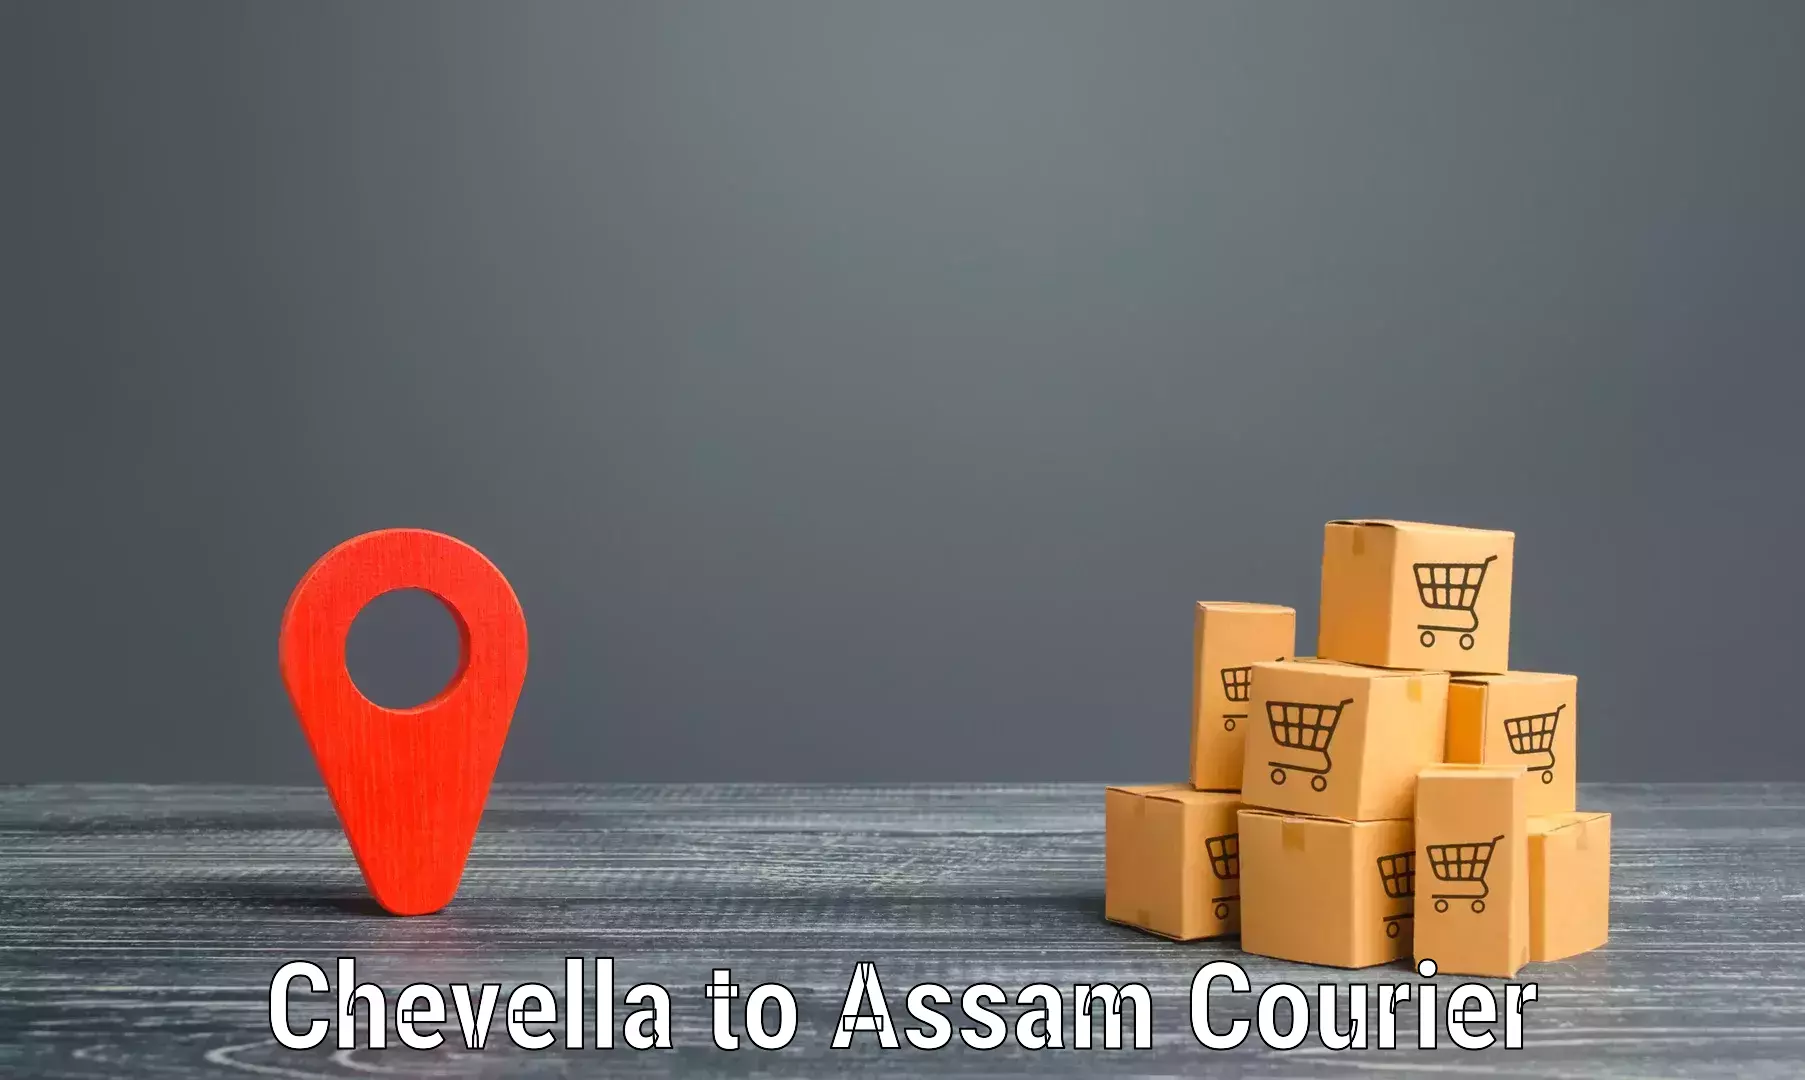 Courier service comparison Chevella to Sonitpur